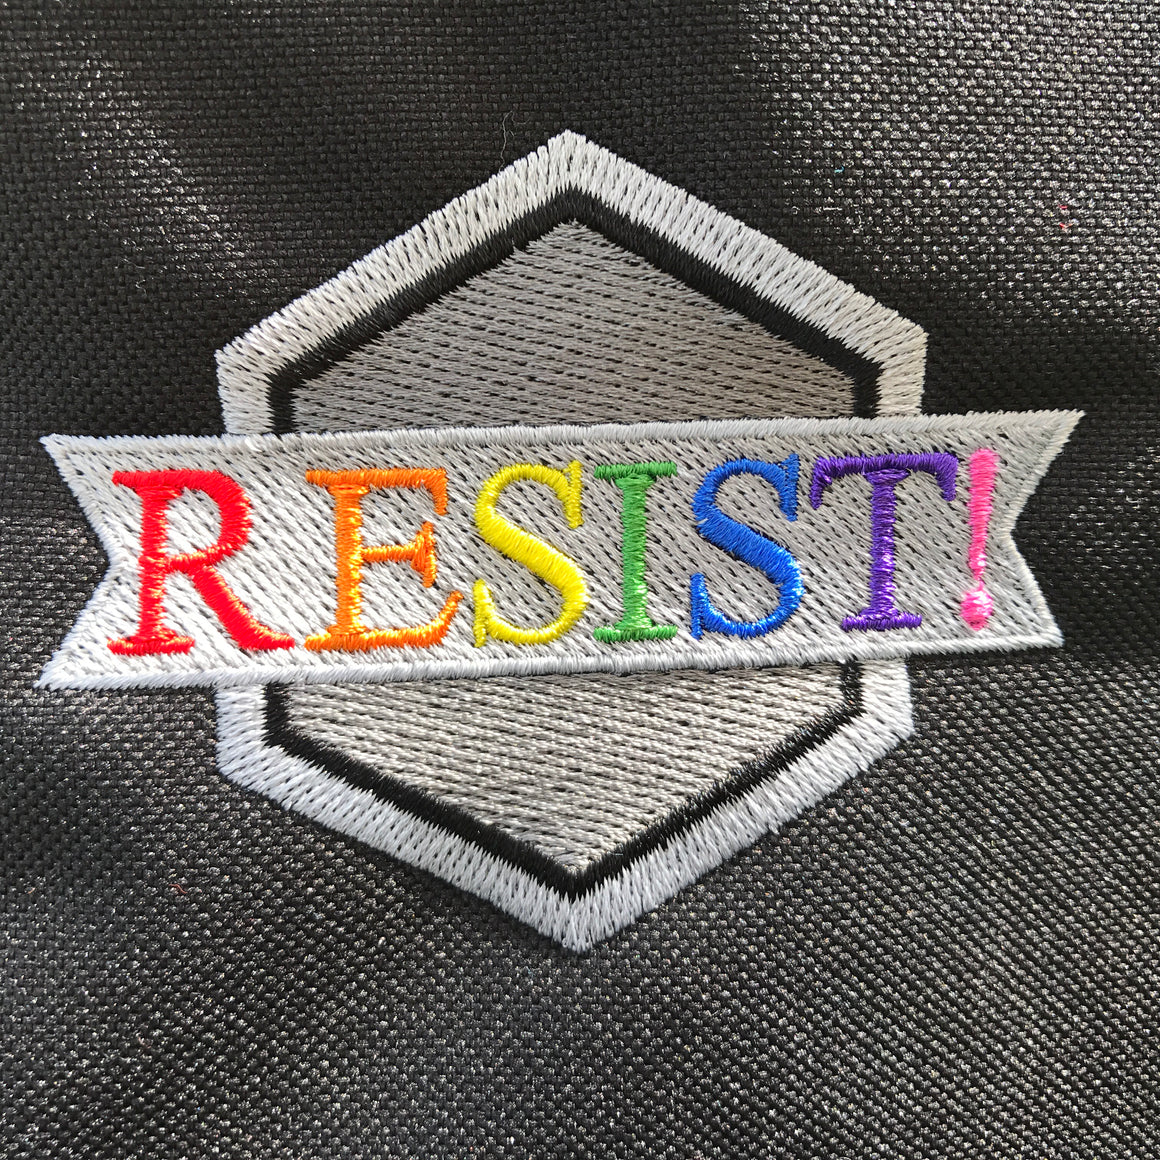 Resist LGBT Activist Tote Bag